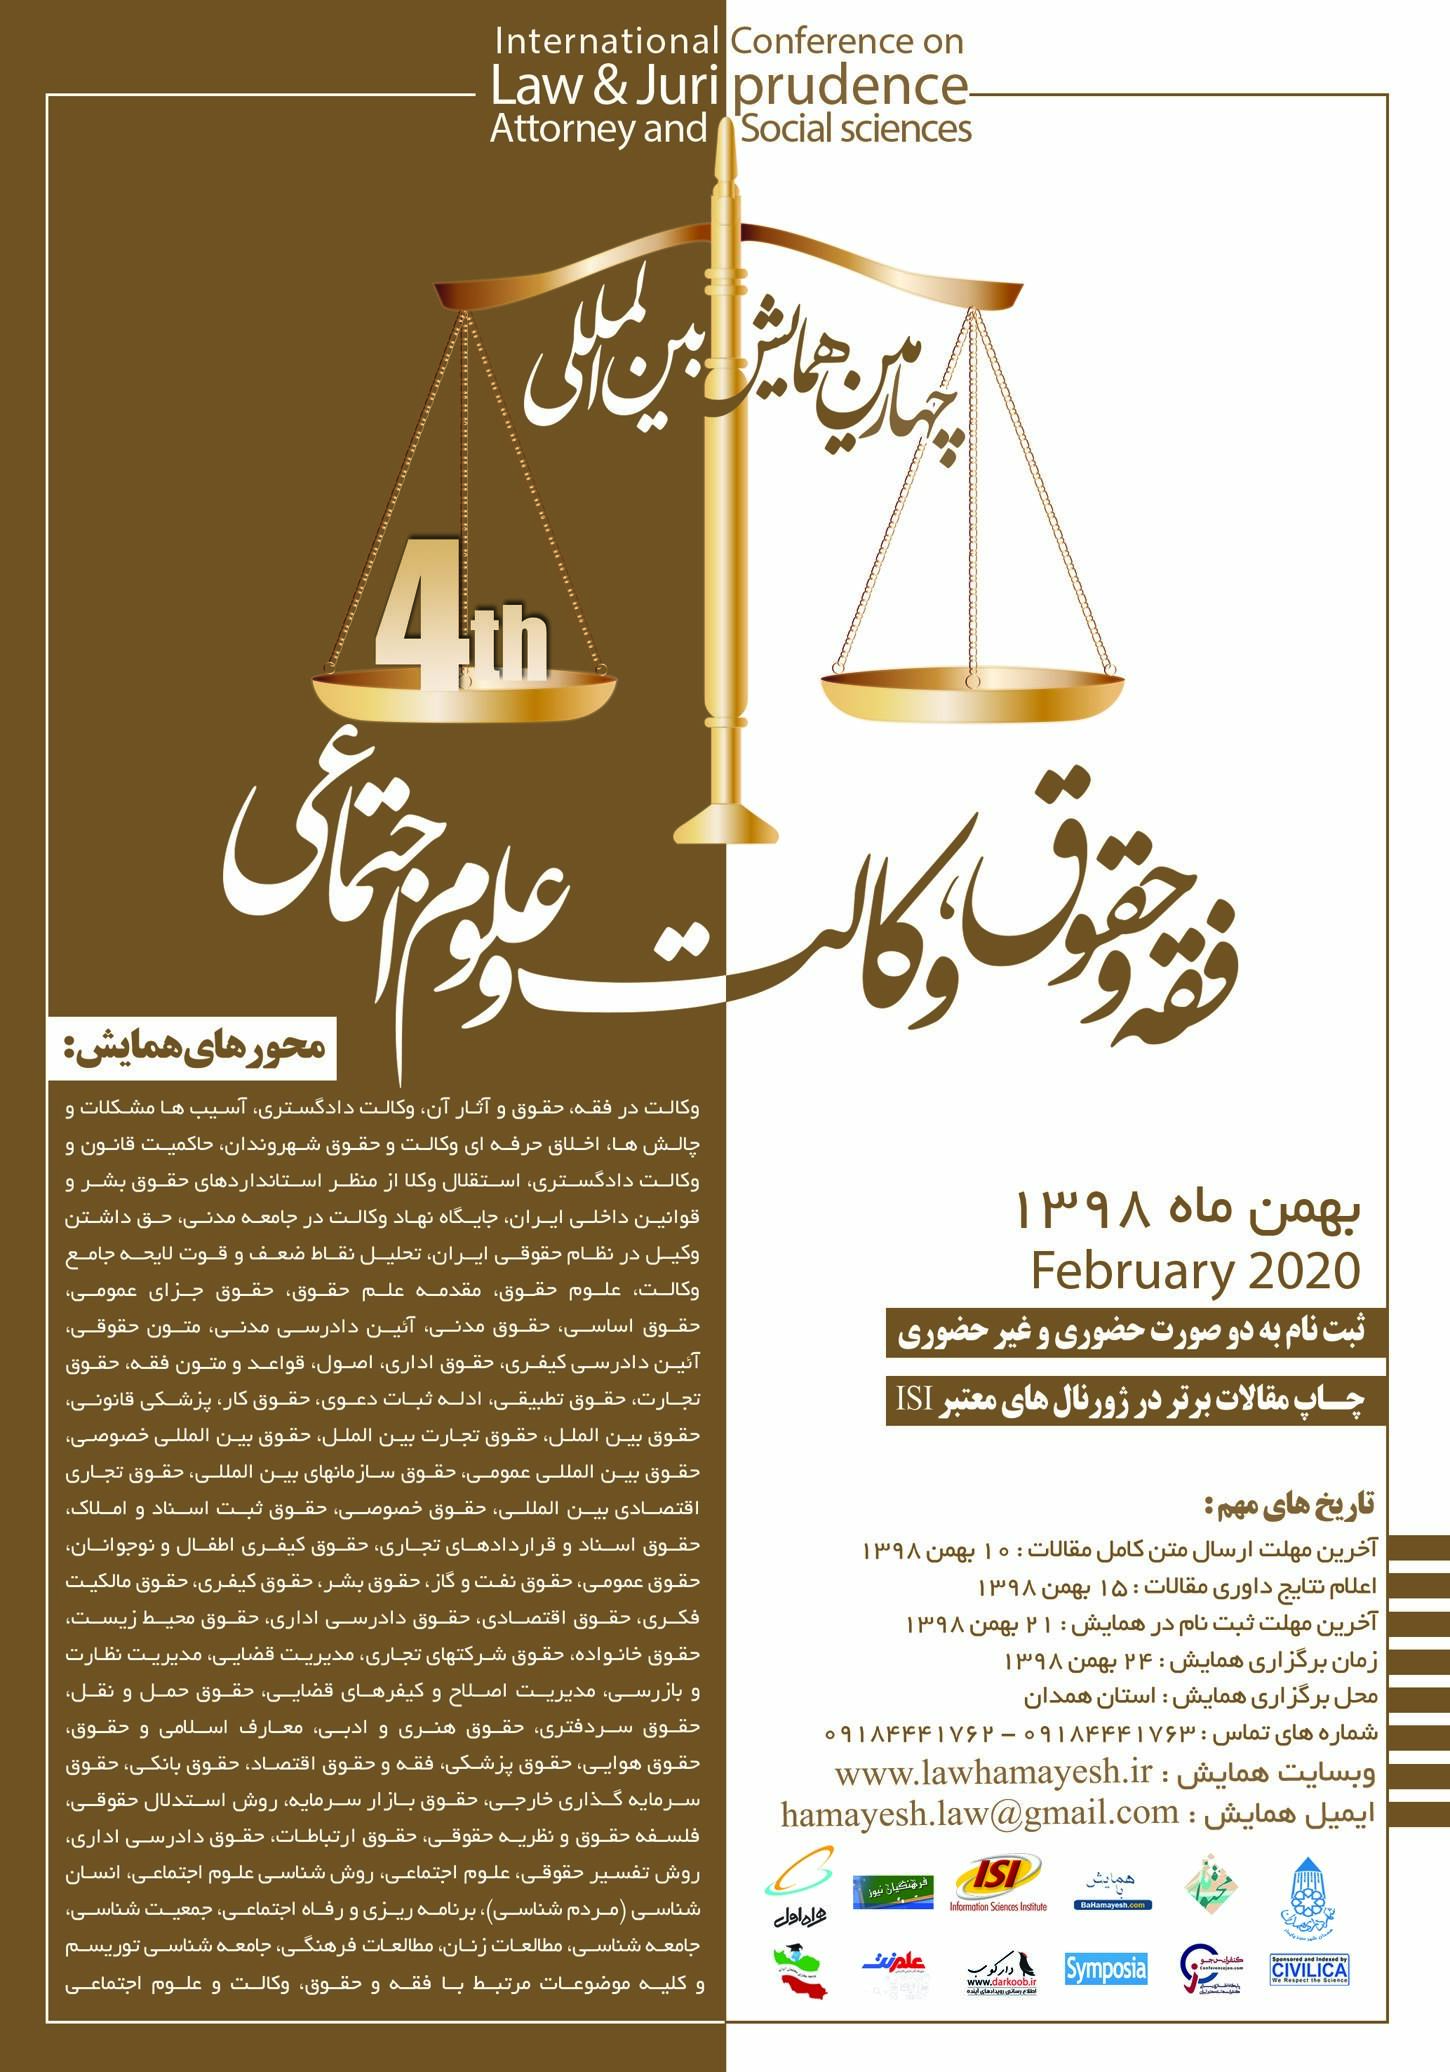 پوستر چهارمین همایش بین المللی فقه و حقوق، وکالت و علوم اجتماعی